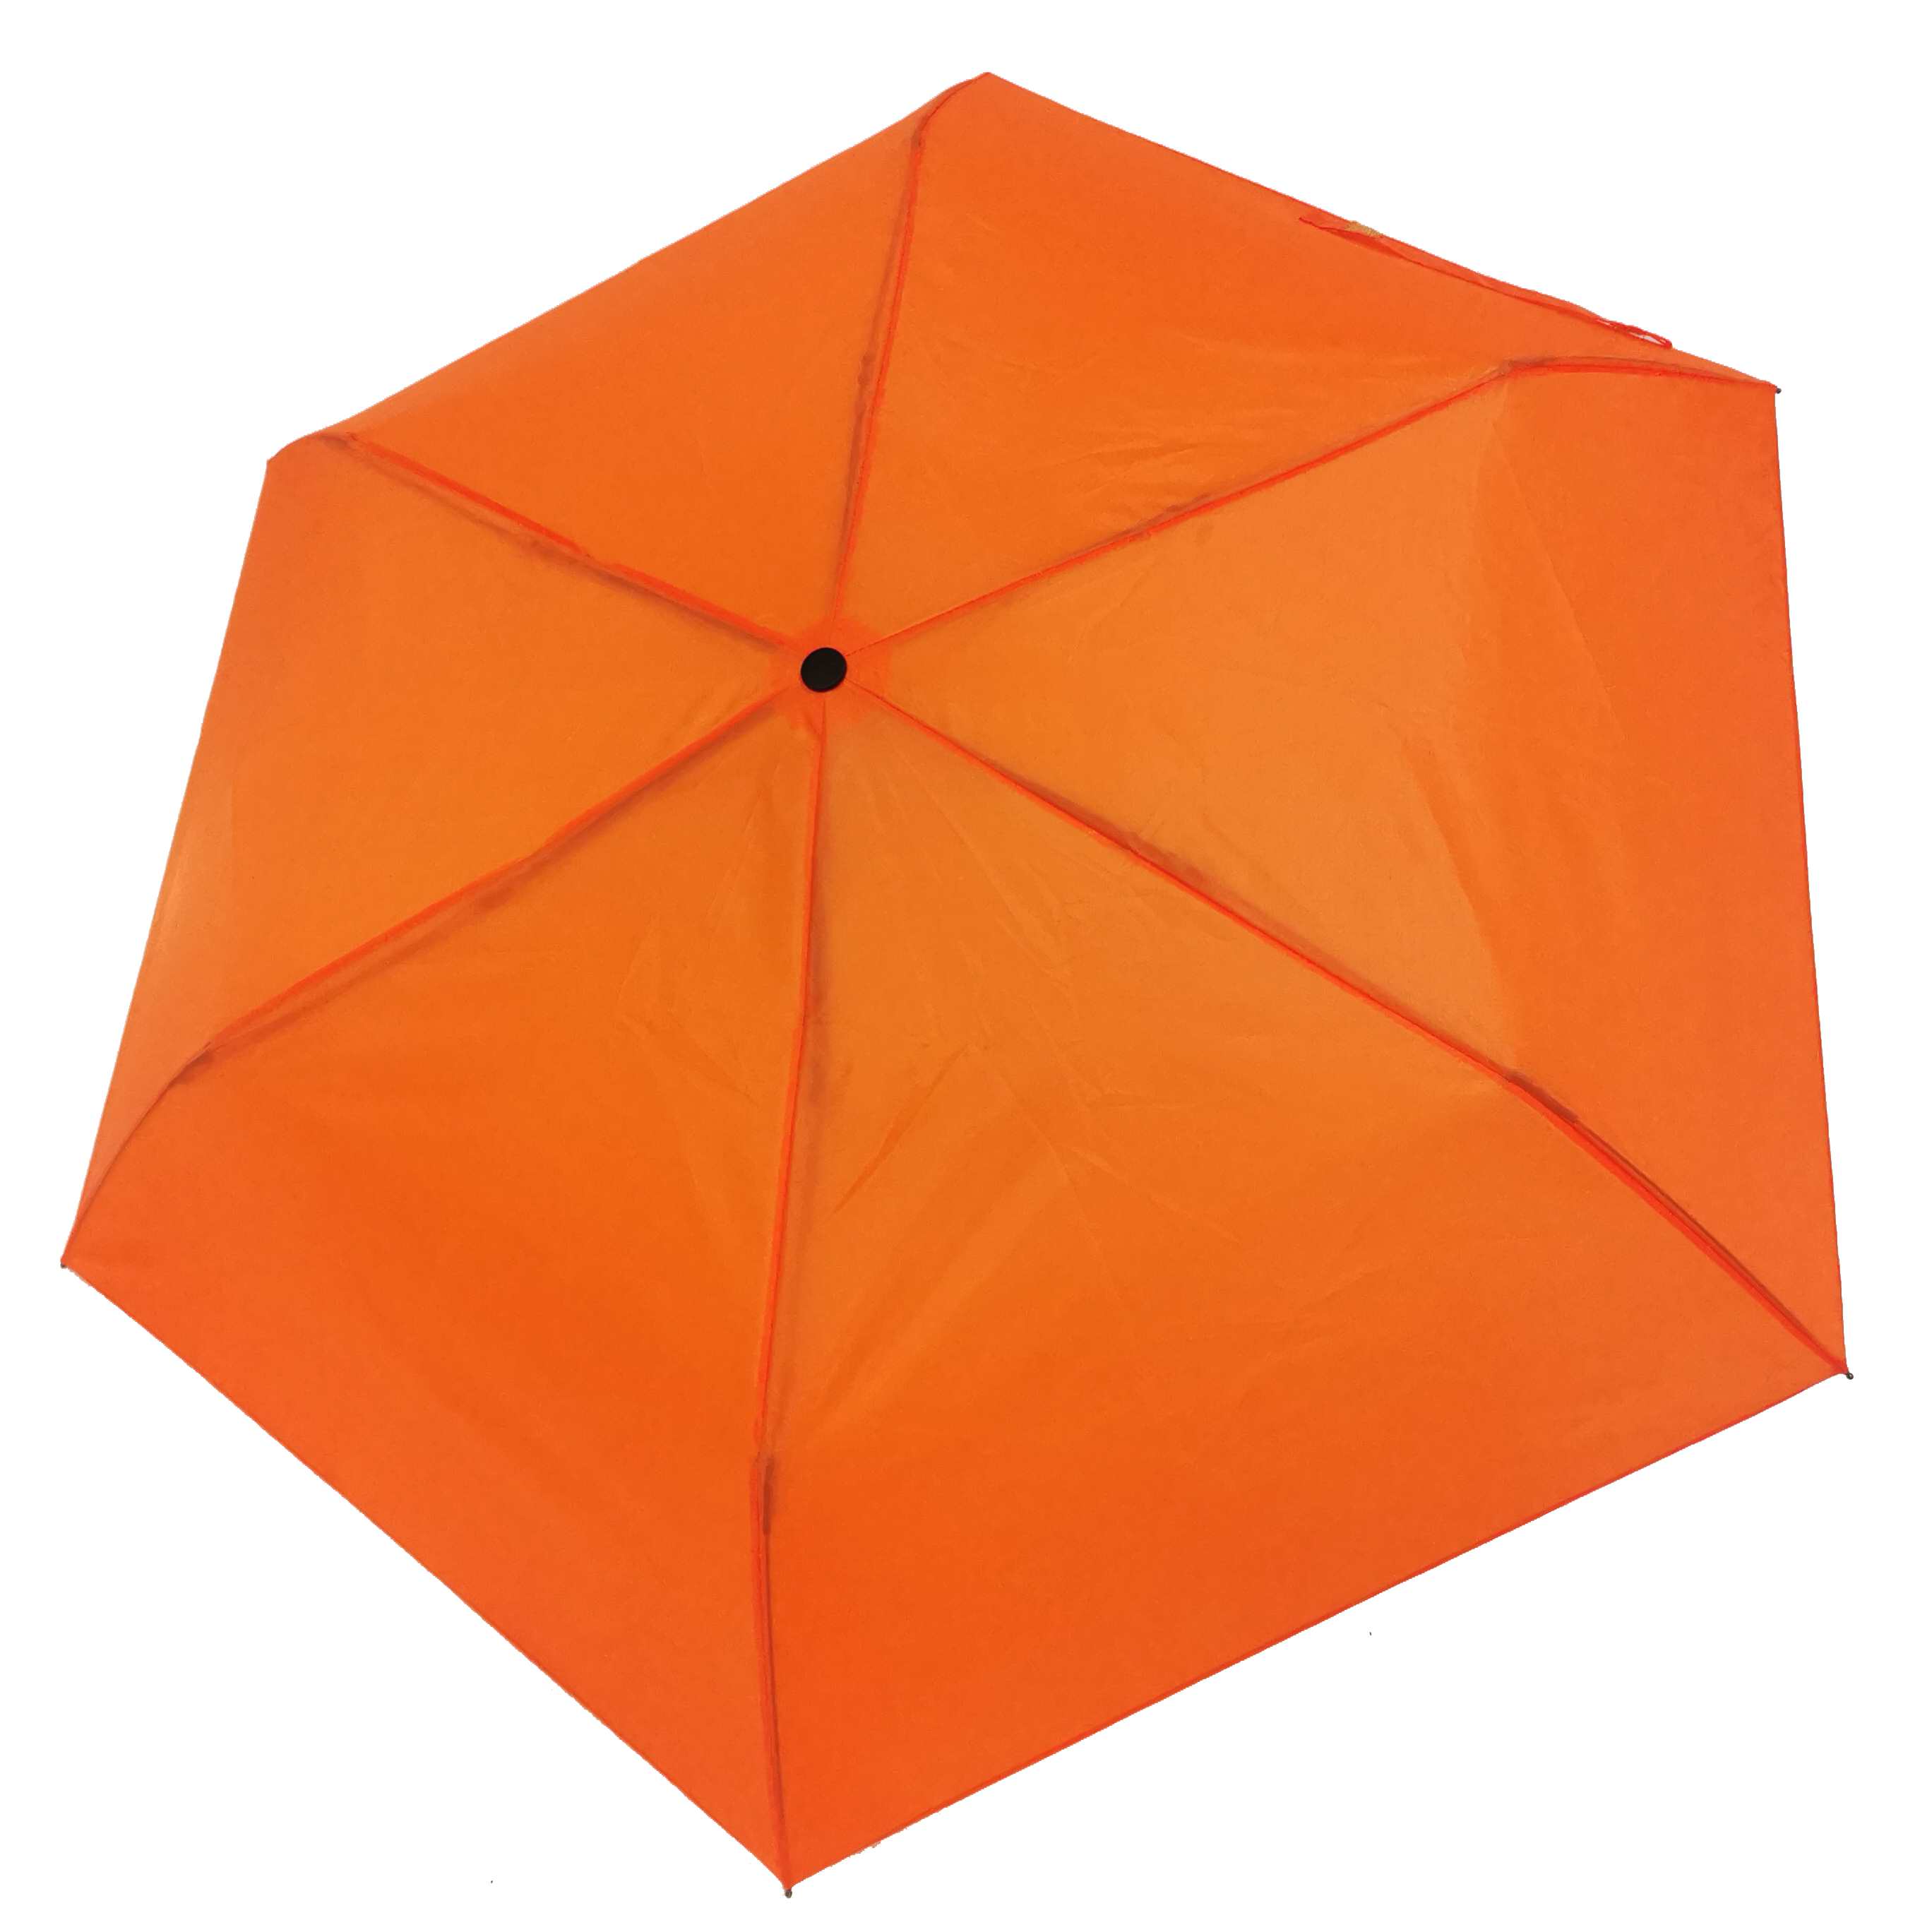 https://www.hodaumbrella.com/3-fold-umbrella-automatic-open-manual-close-01-product/